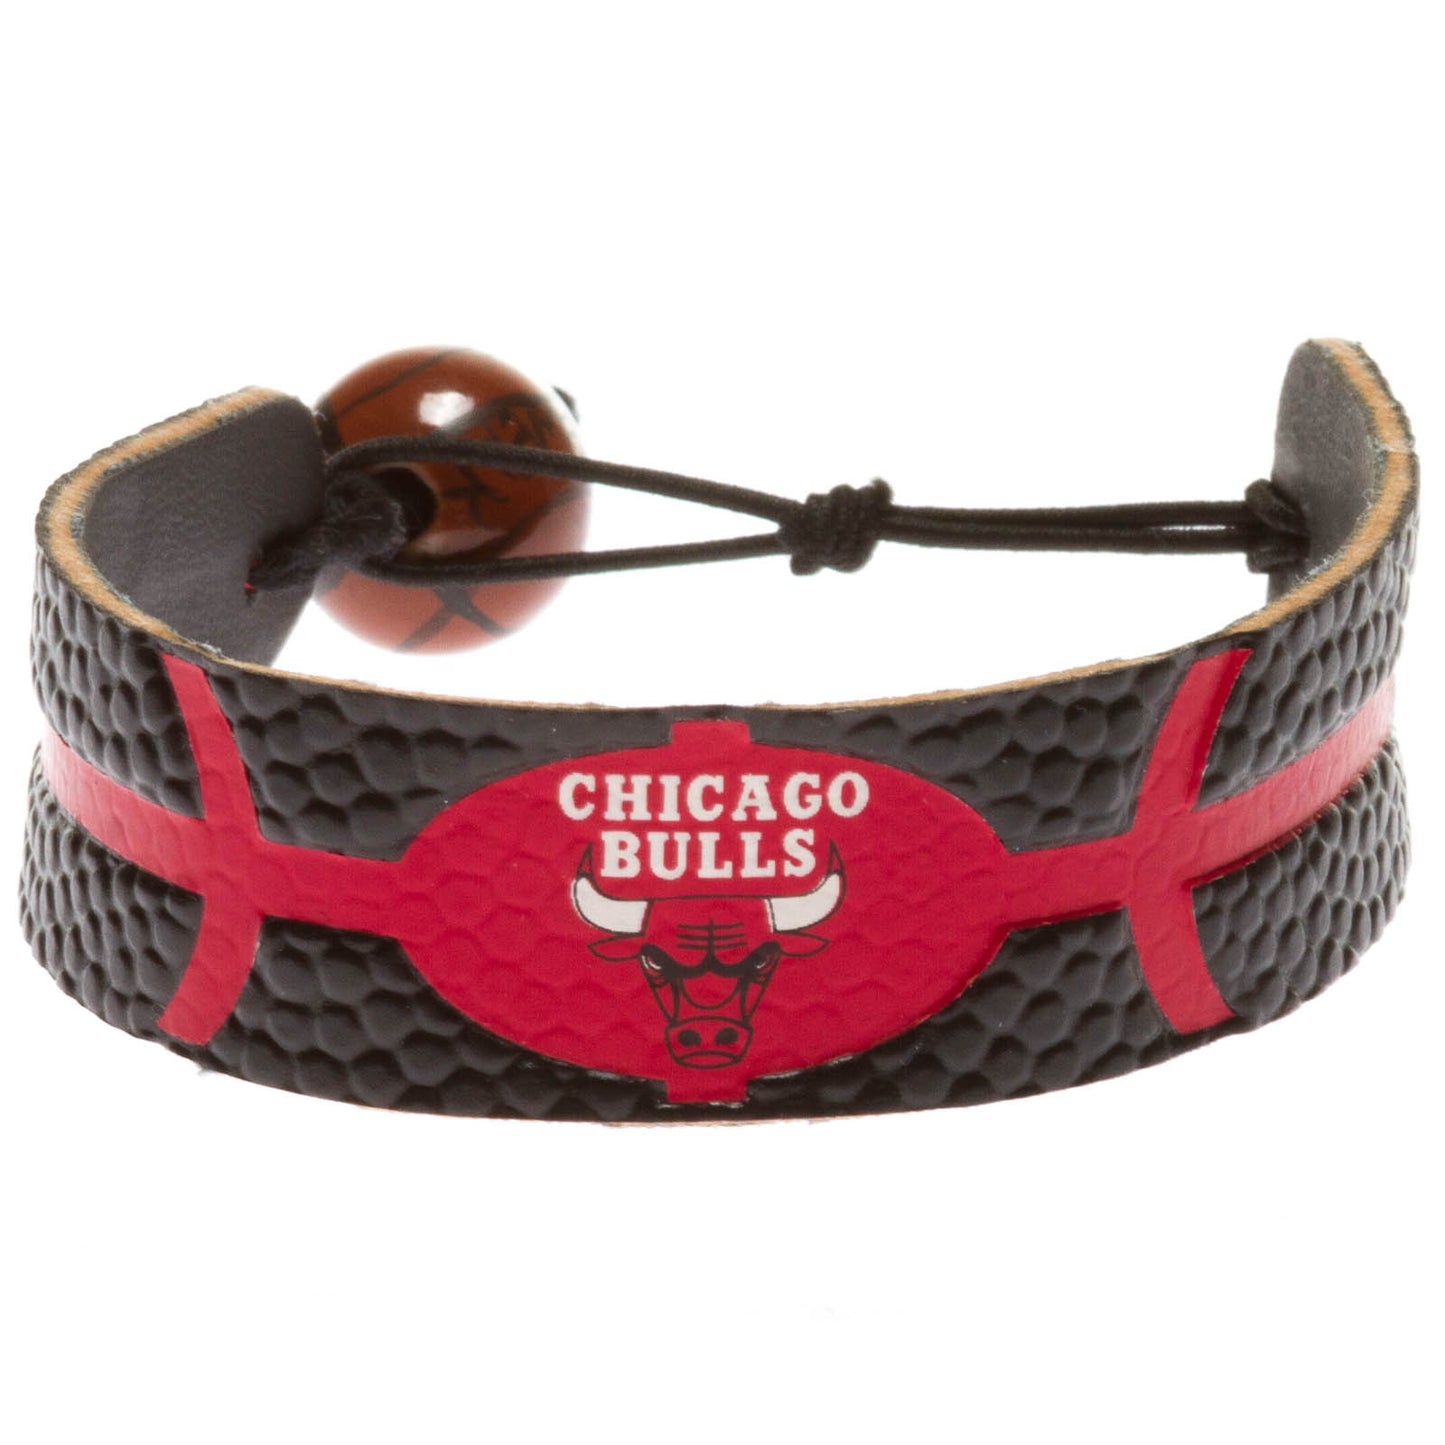 Chicago Bulls Black & Red Basketball Bracelet